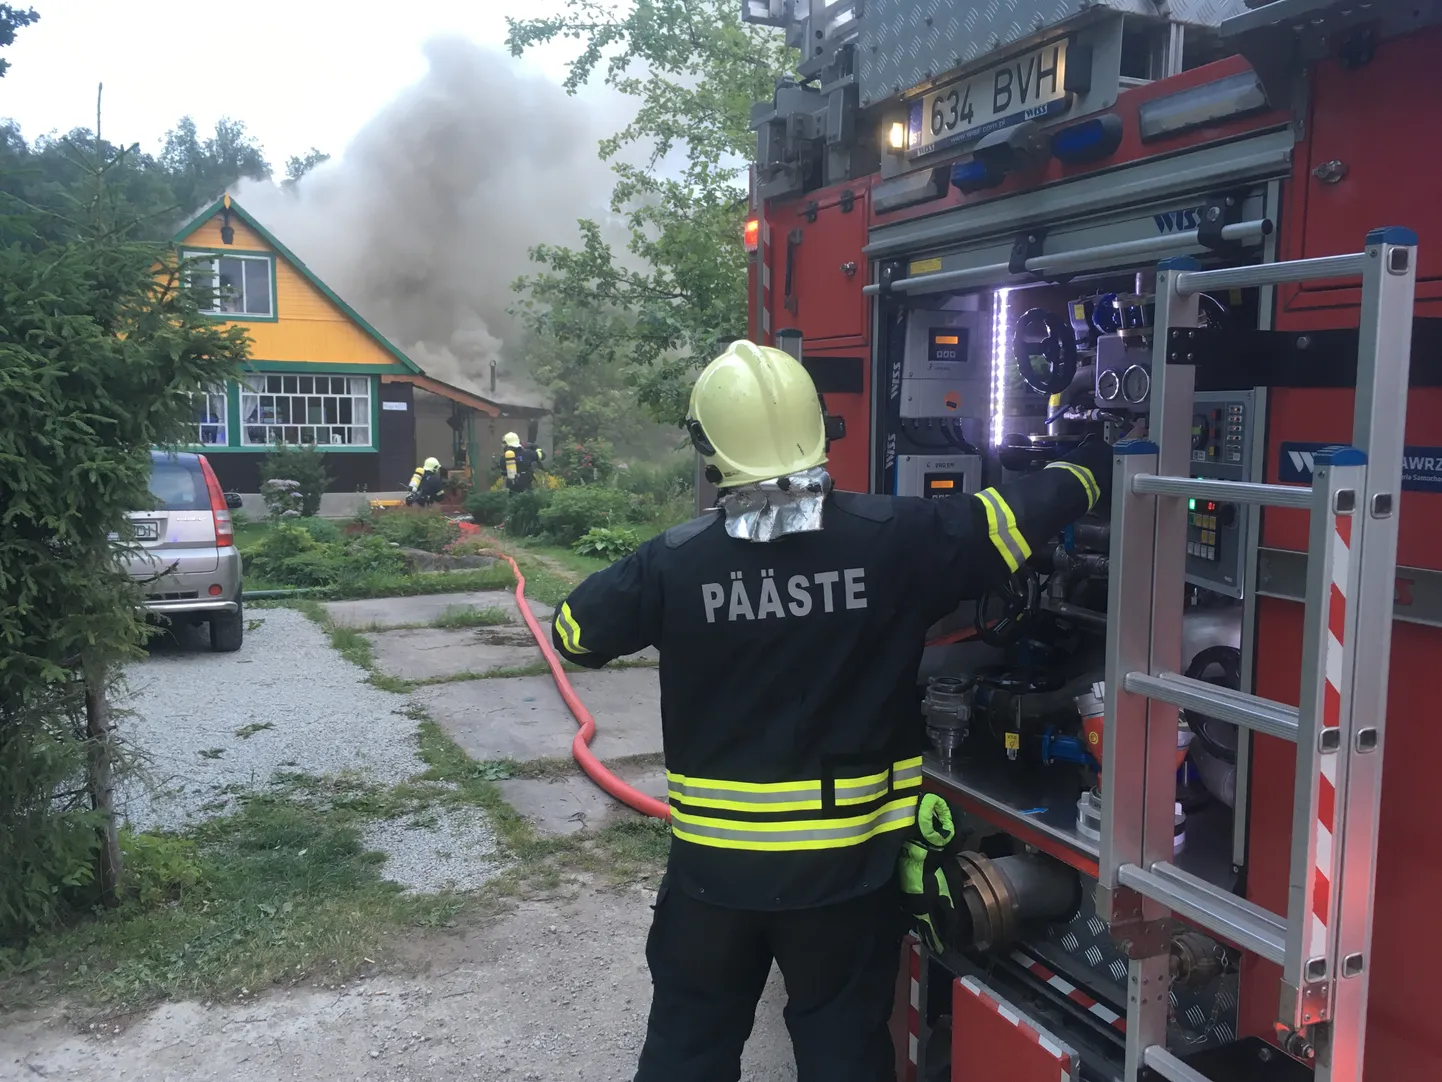 Спасатели тушат пожар в частном доме. (Фотоснимок иллюстративный, 2018 год)